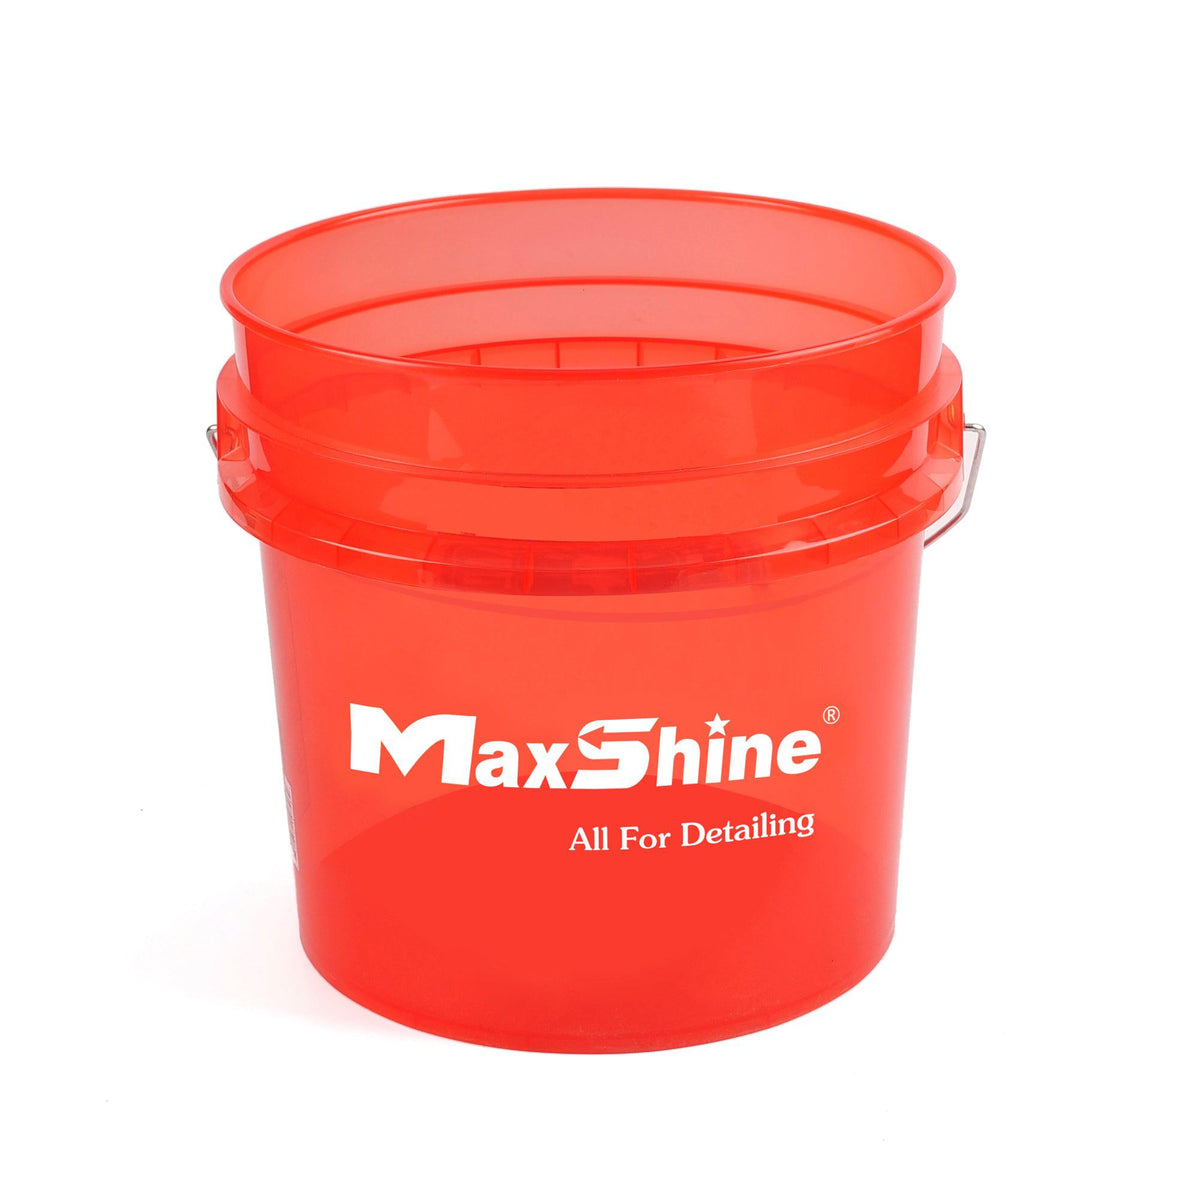 maxshine multifunction bucket lid seat with